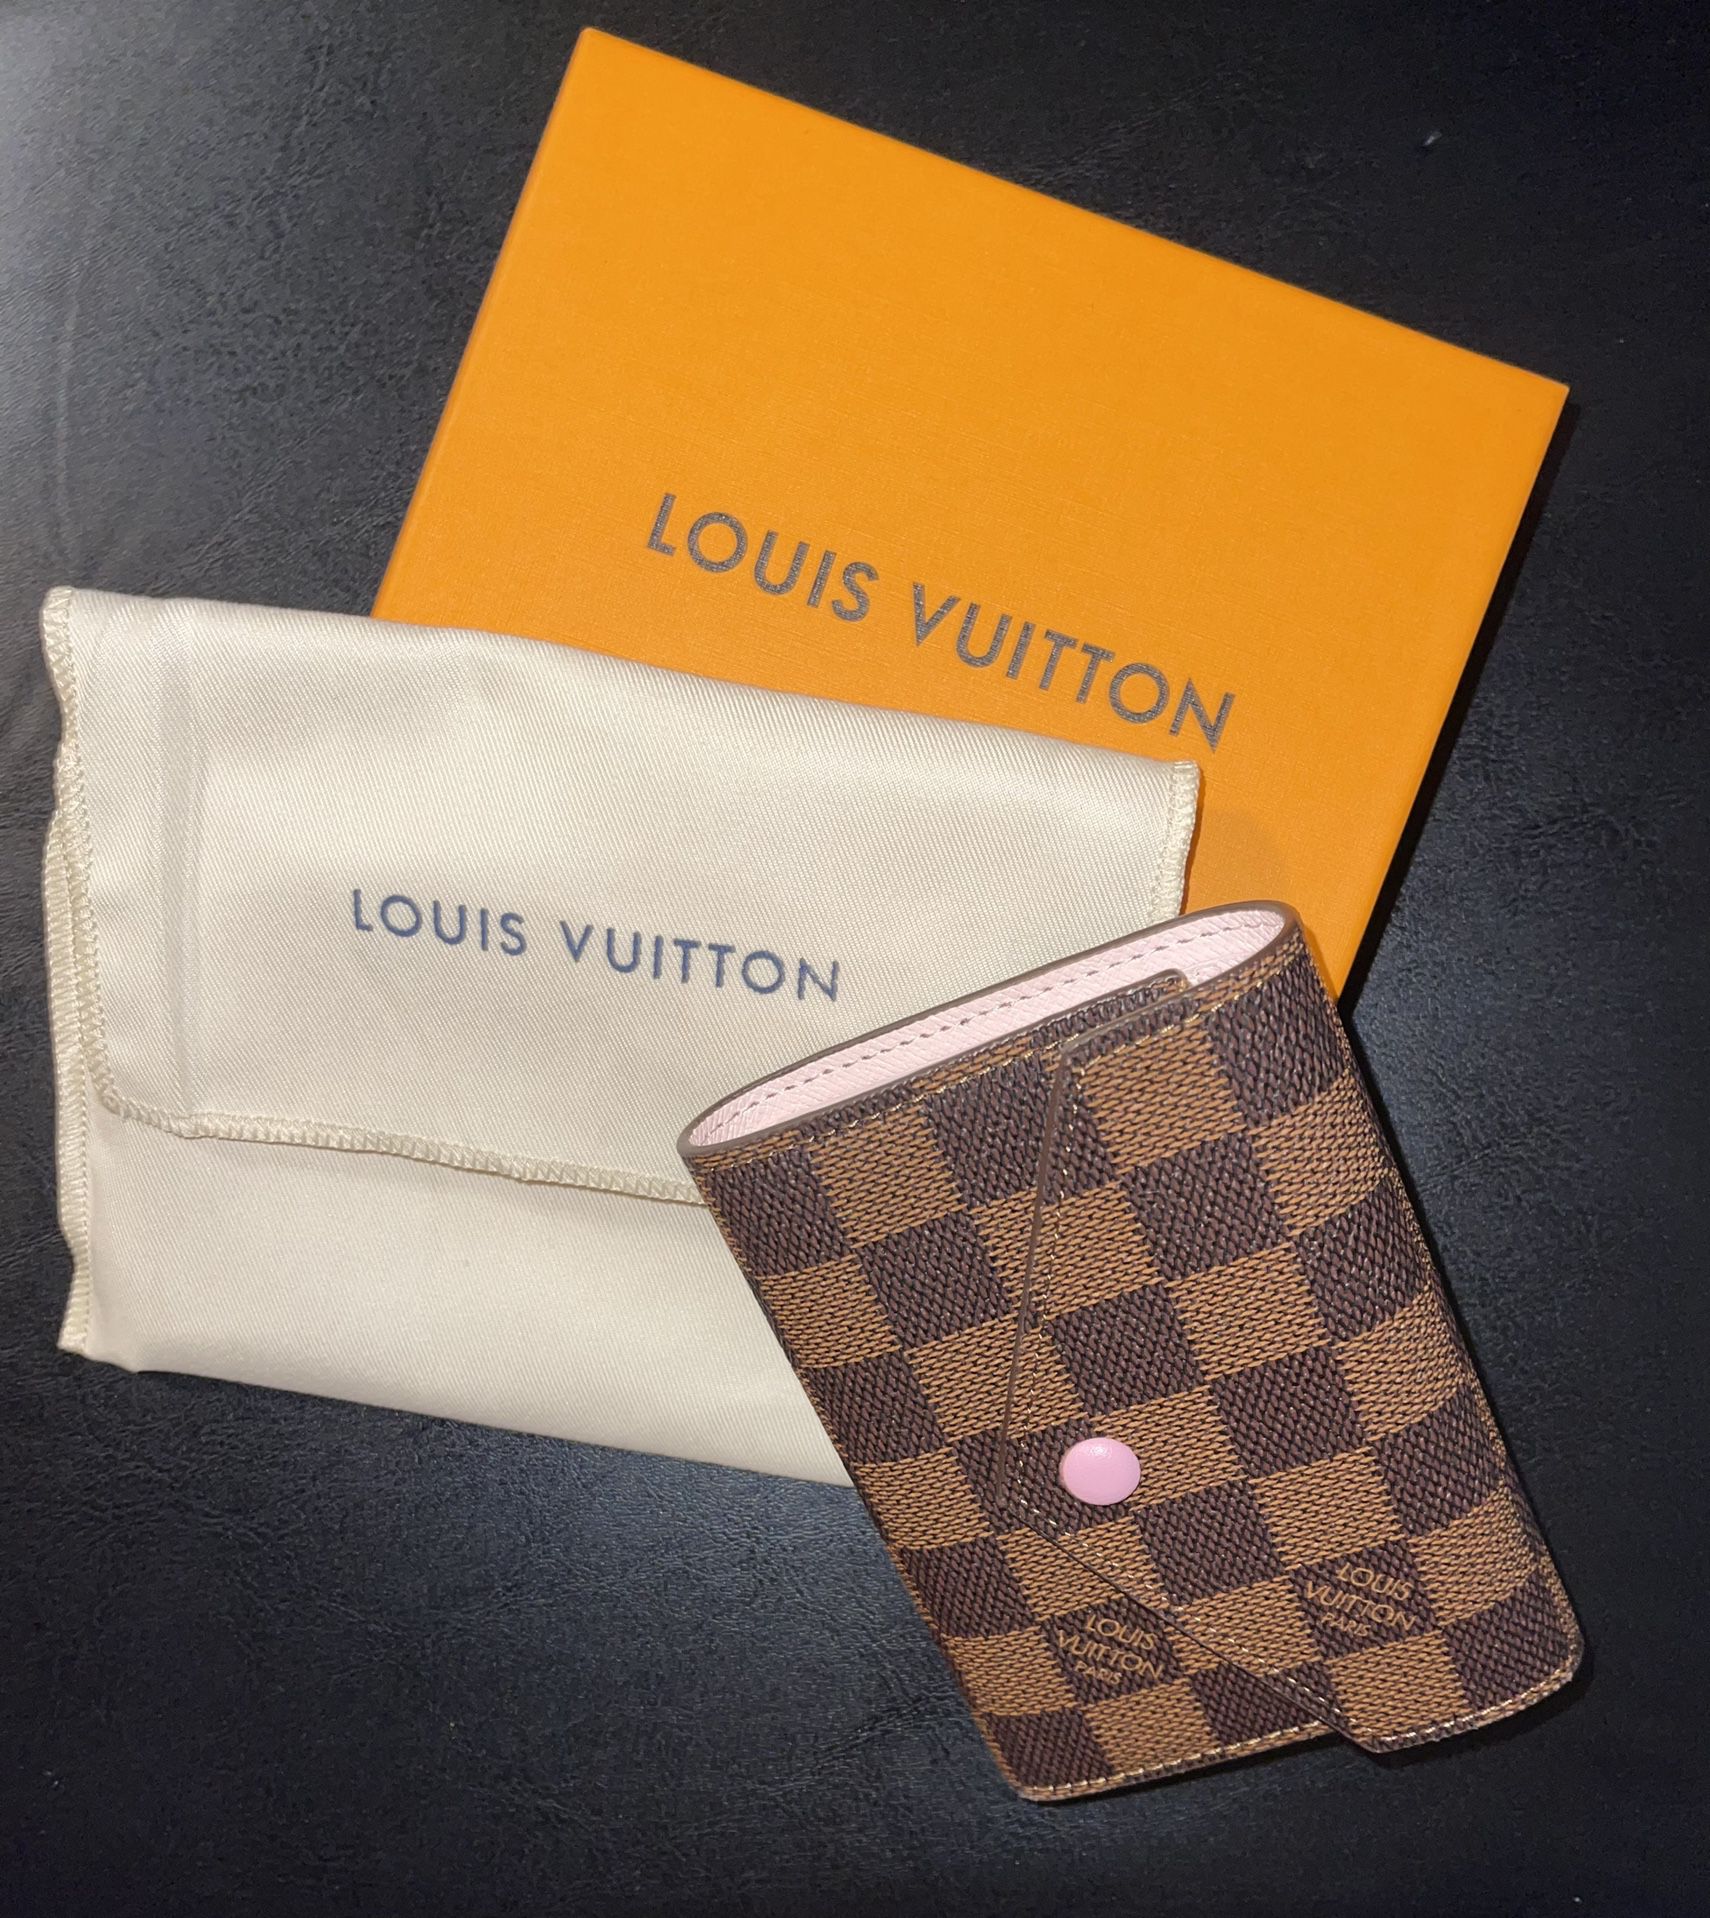 Louis Vuitton Wallet for Sale in Edmond, OK - OfferUp